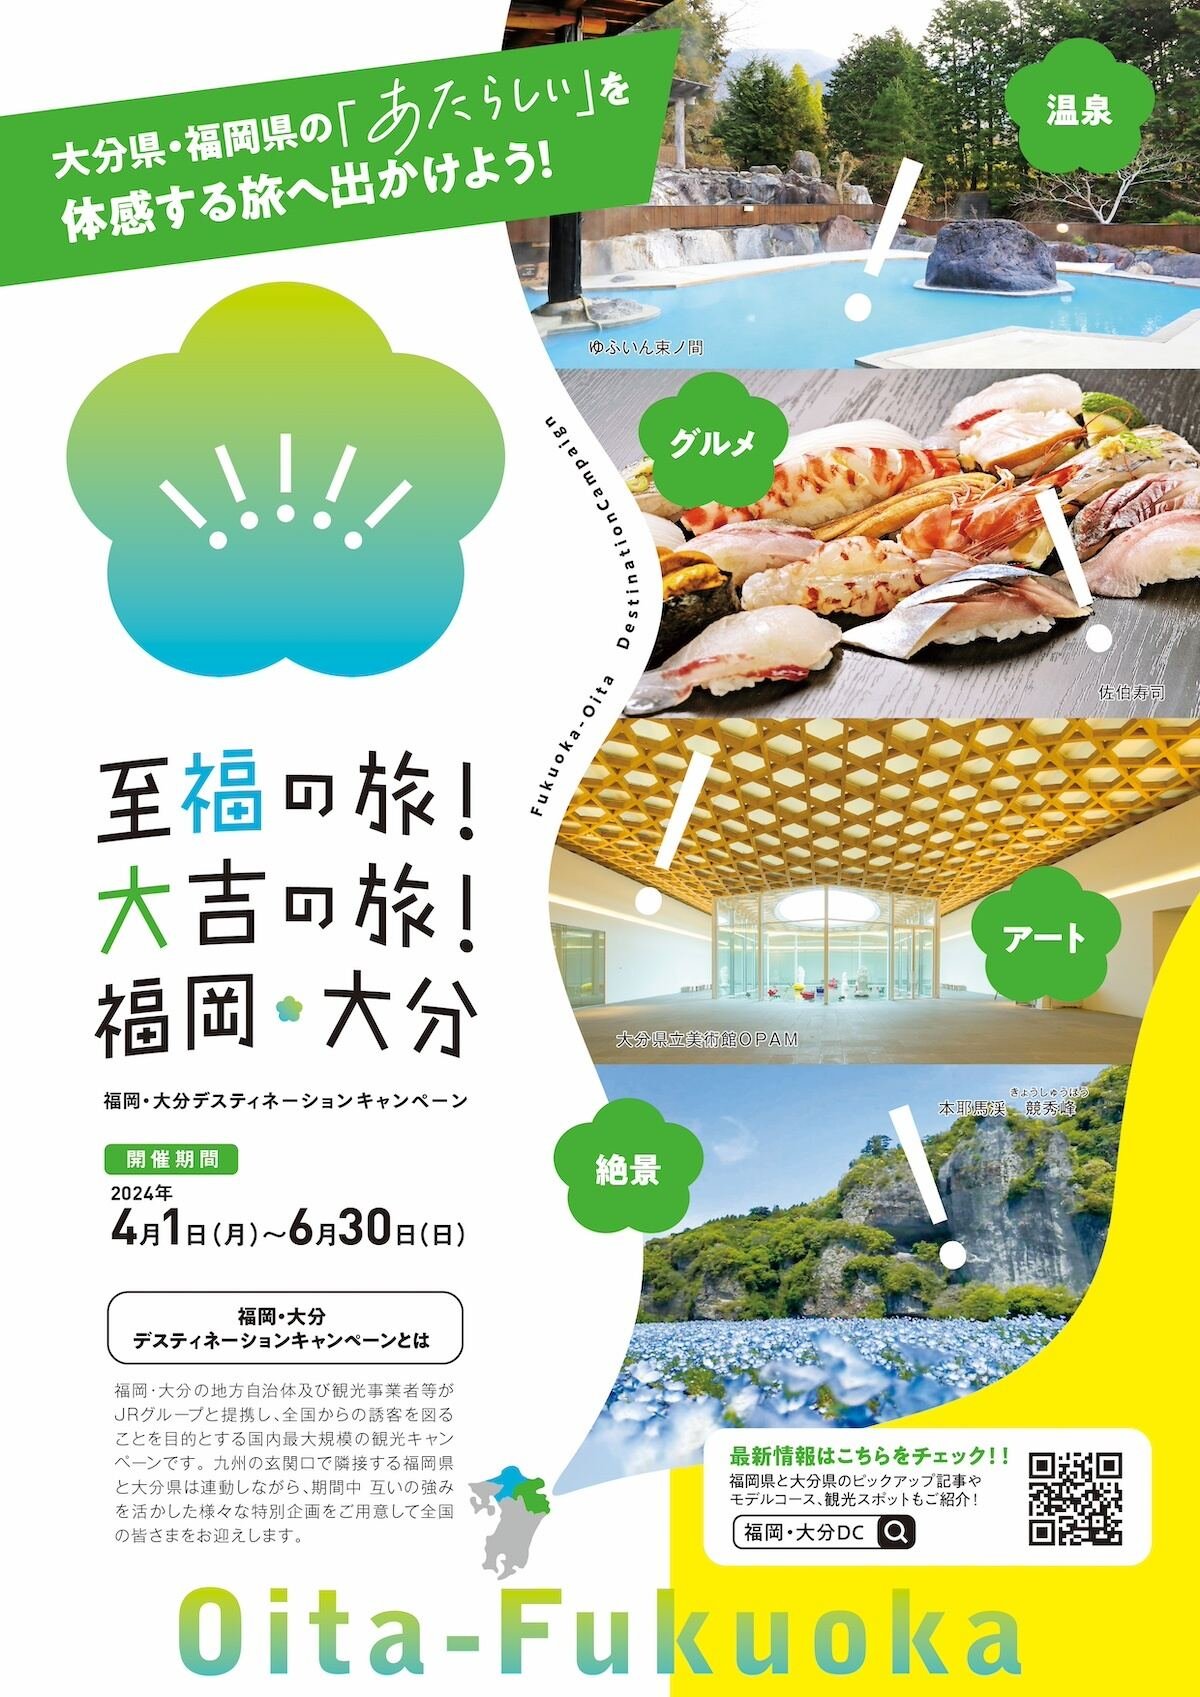 大分と福岡で大型観光キャンペーン開催